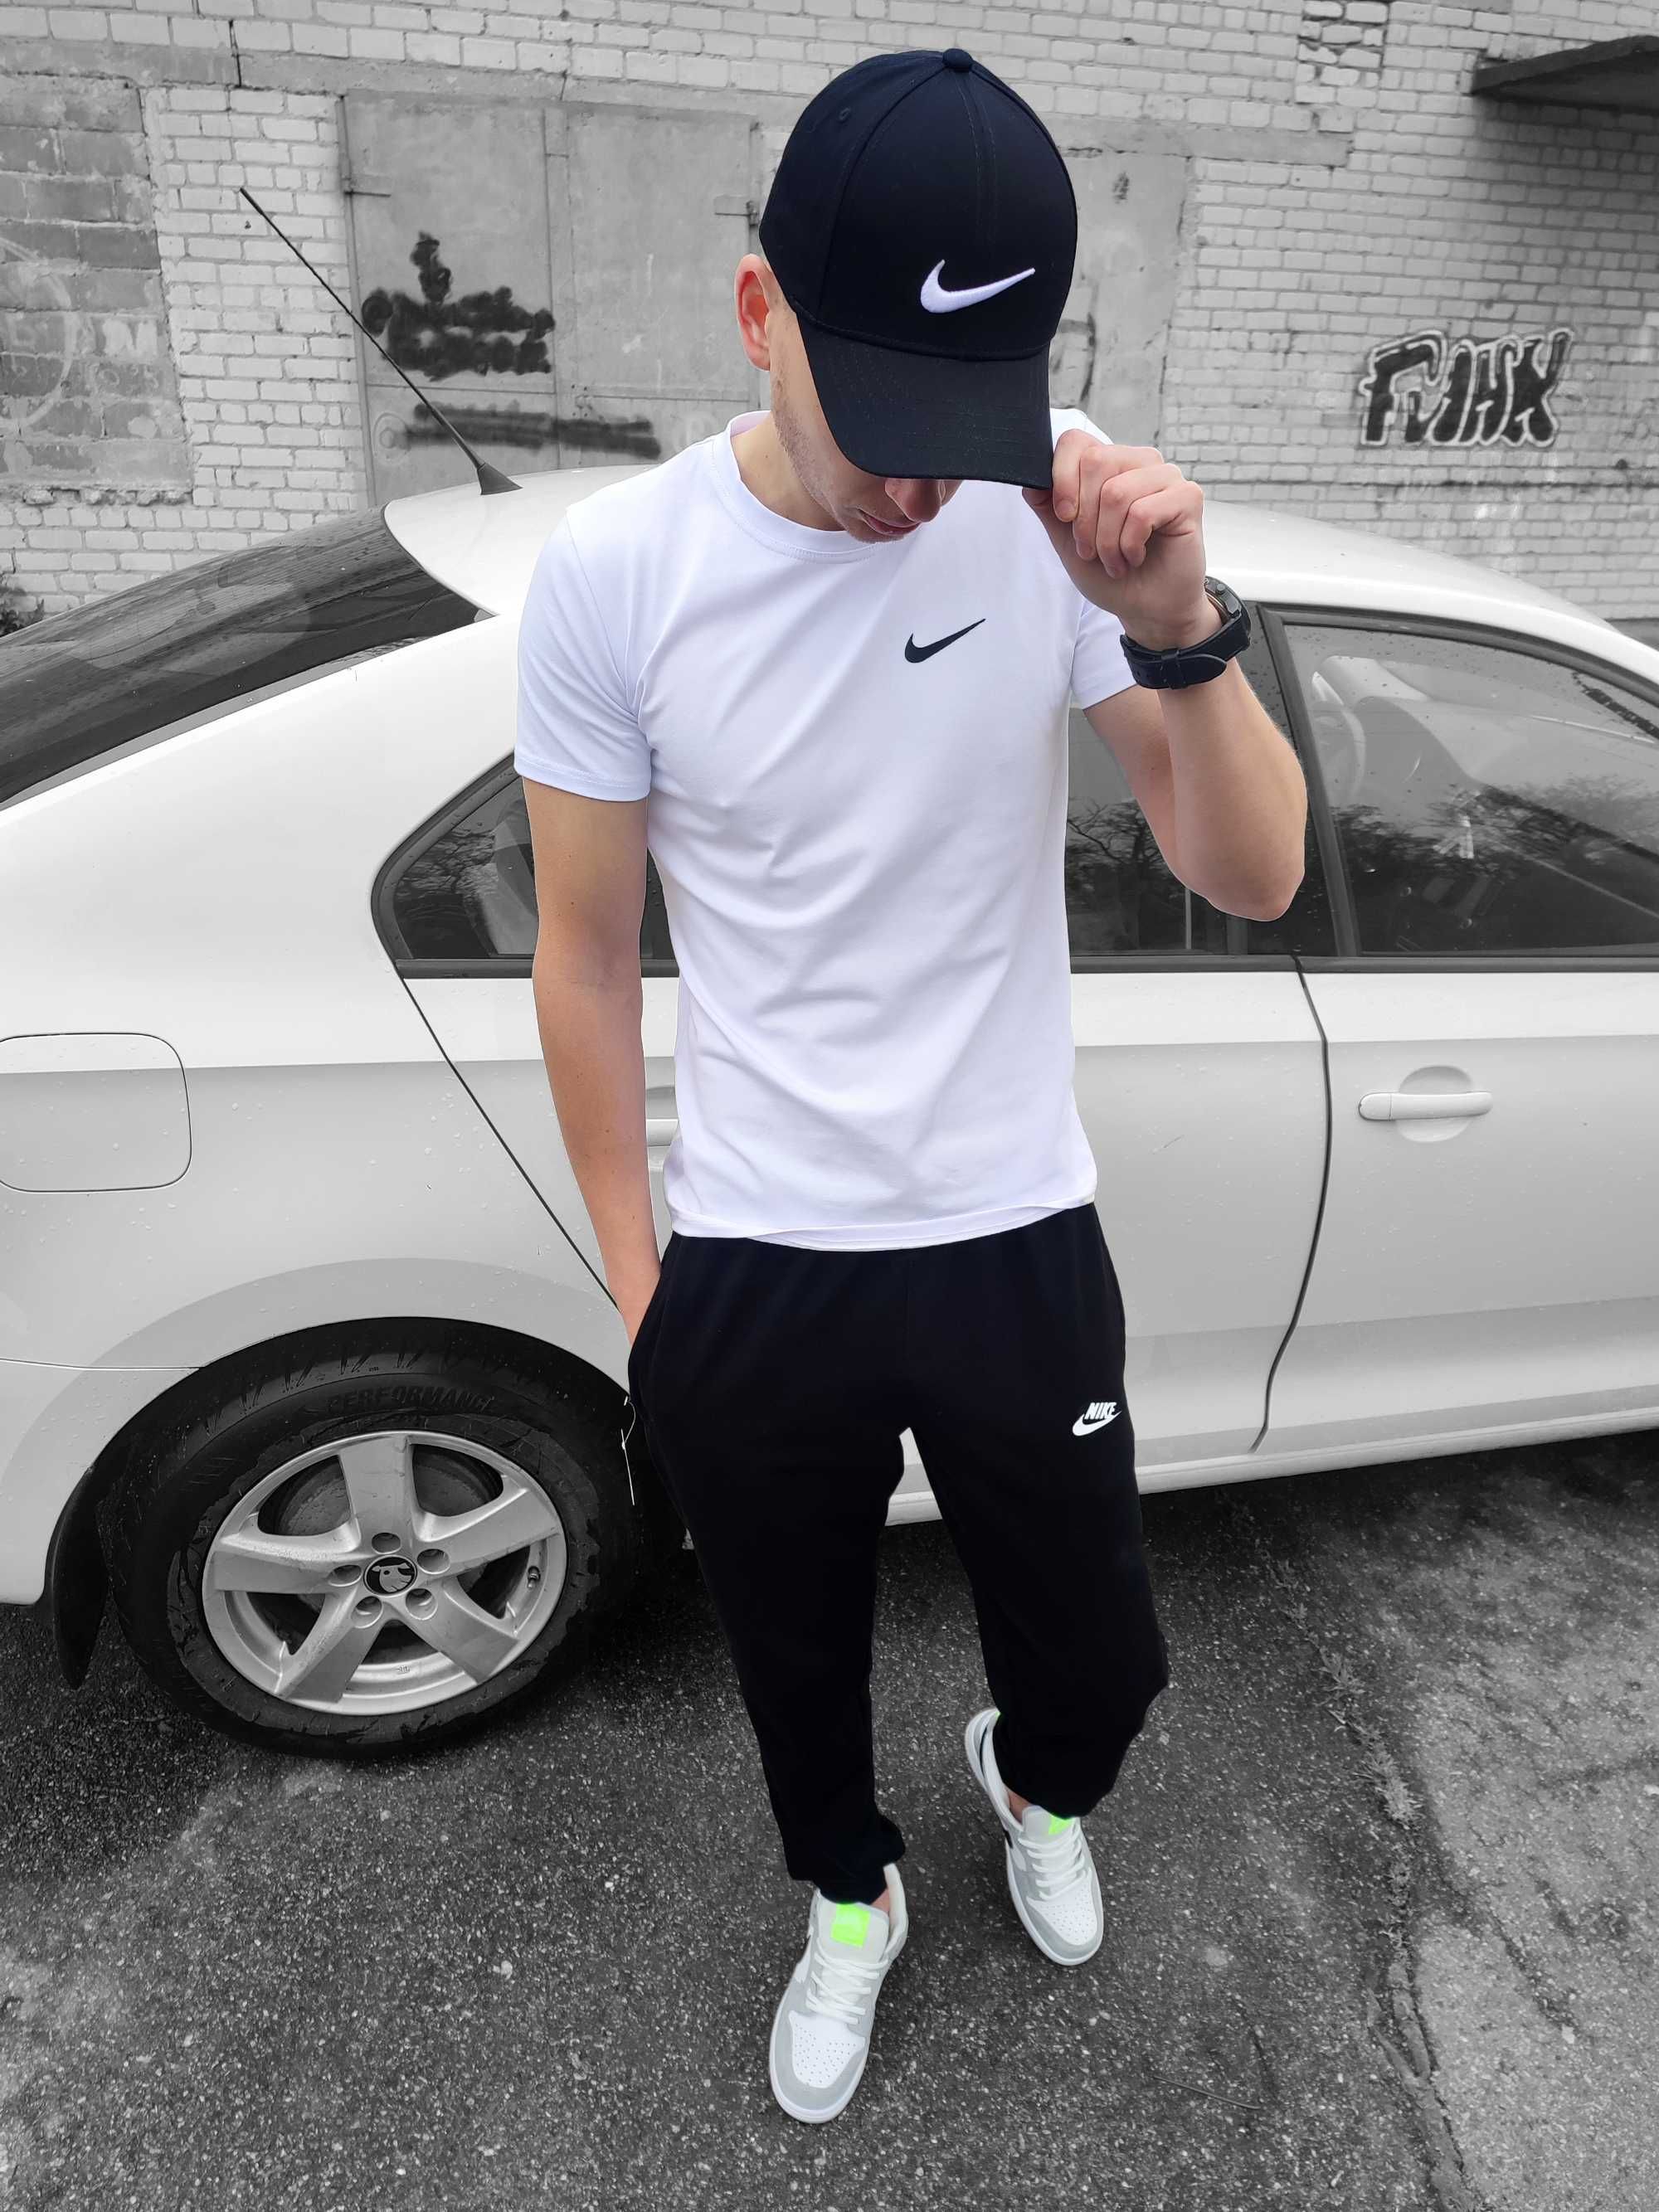 Літній чоловічий комплект Nike футболка + штани чорний білий